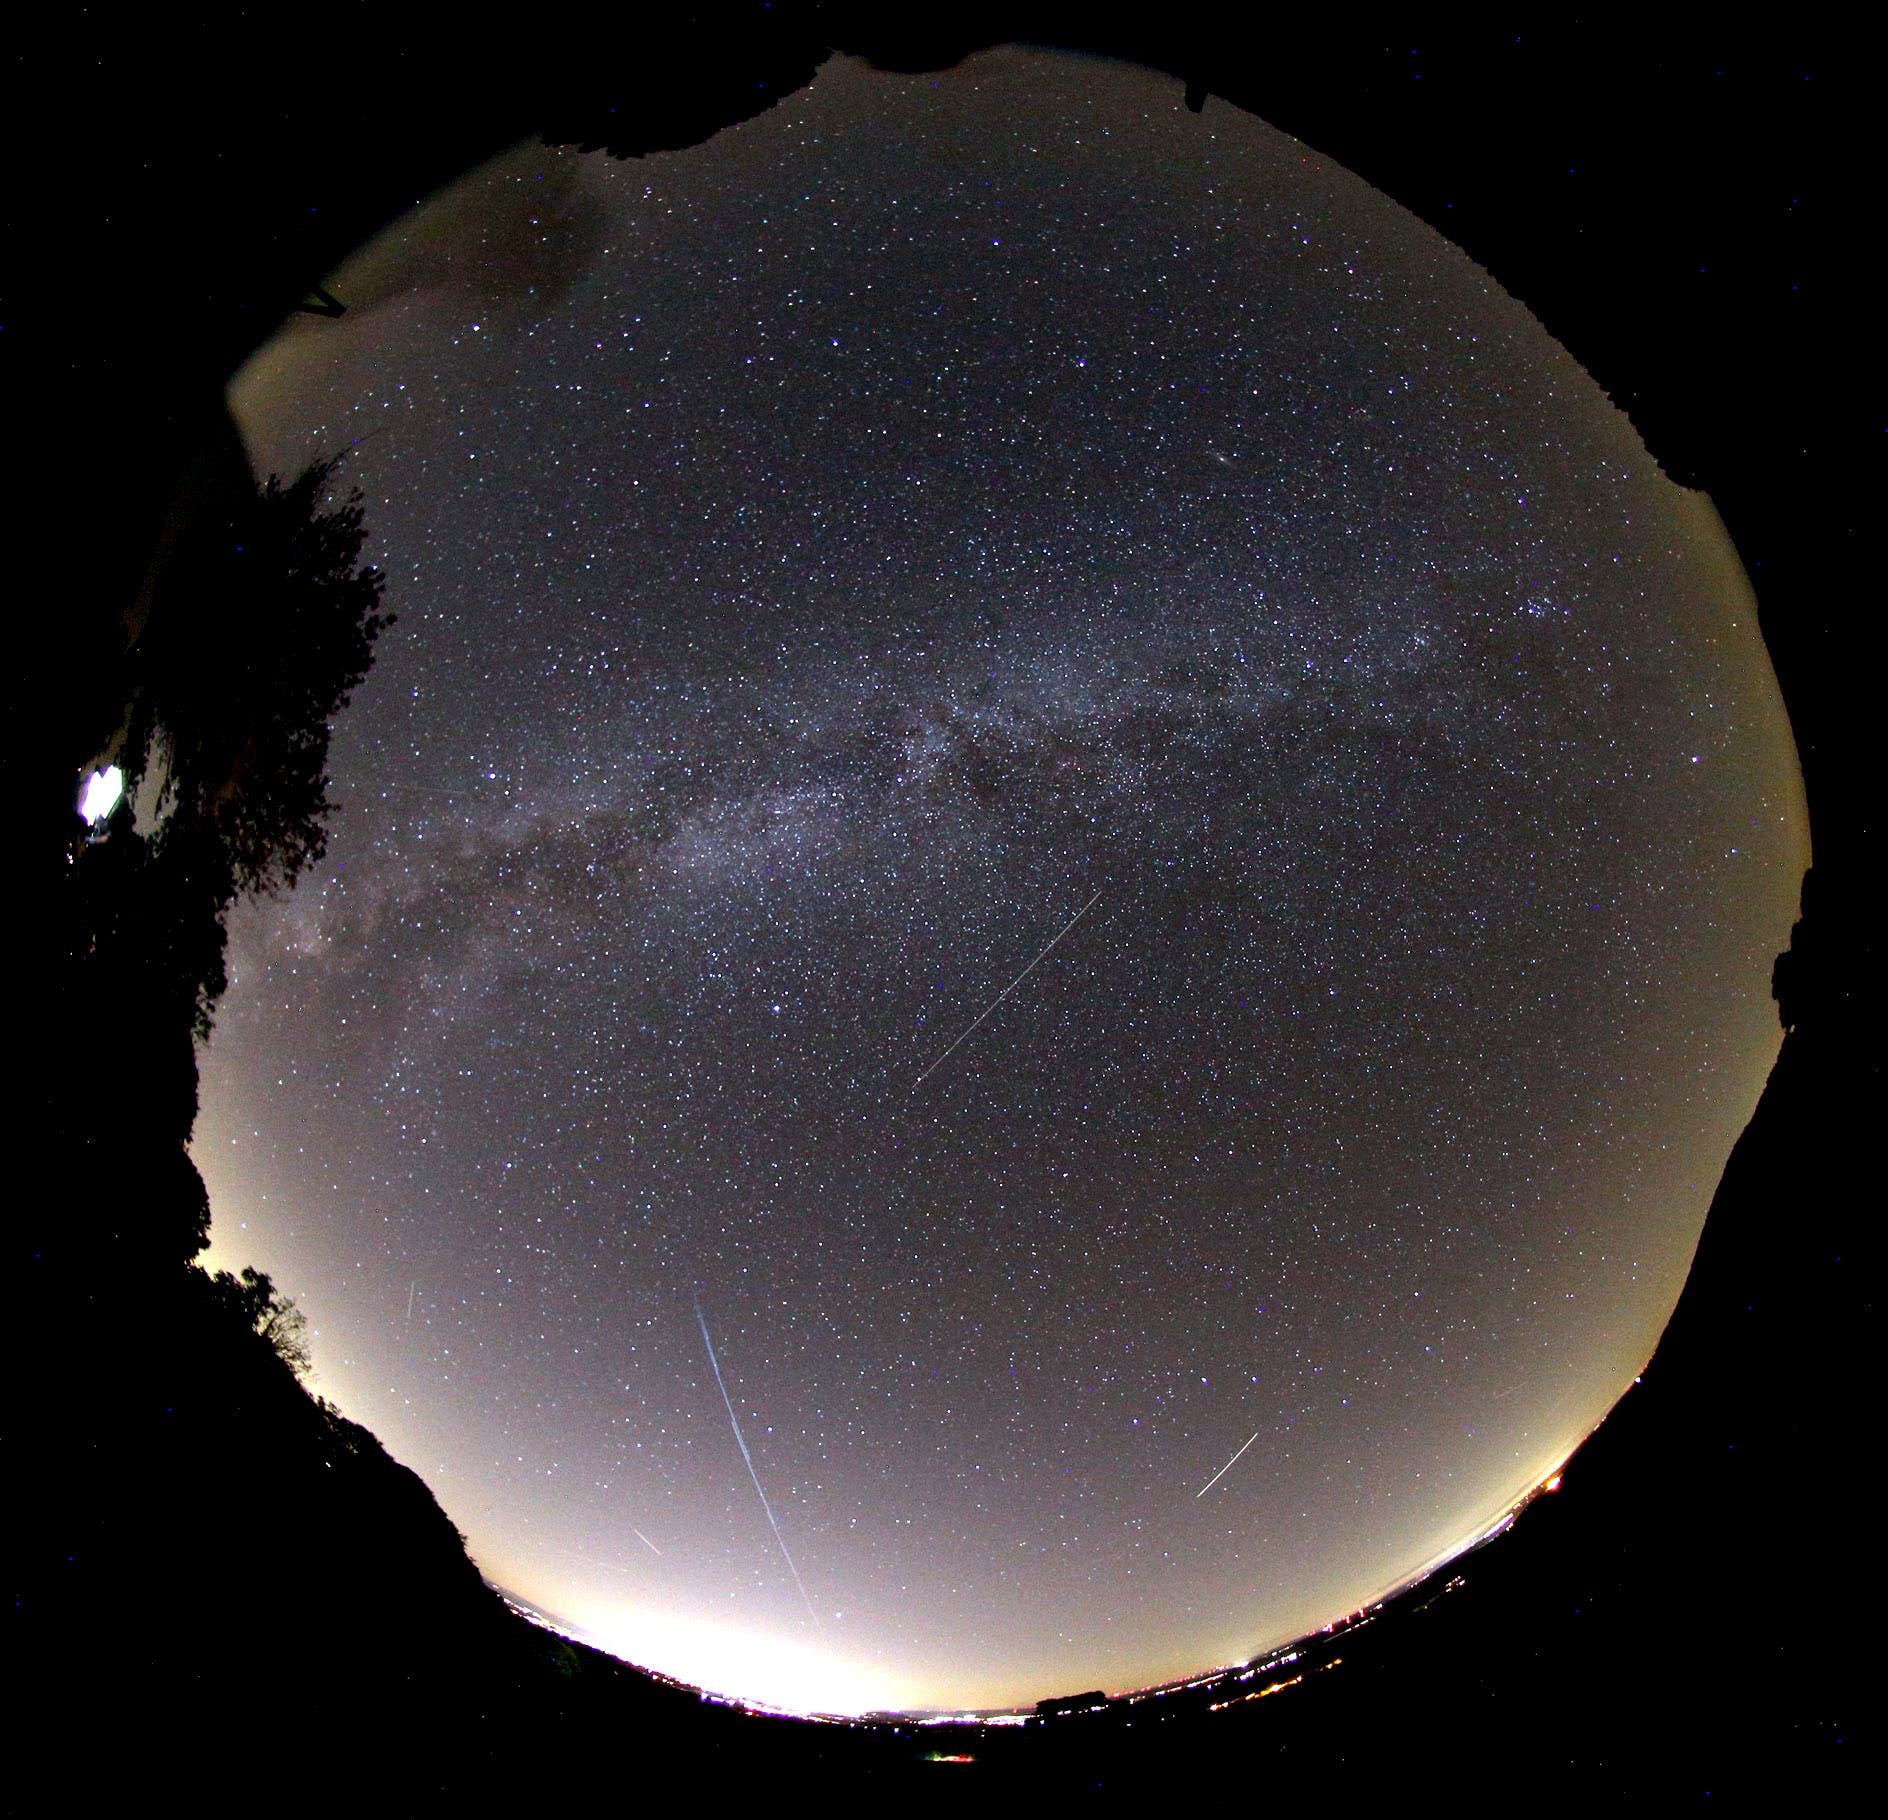 Die Aufnahme mit einem Fischaugenobjektiv zeigt große Teile des dunklen Himmels mit punktförmigen Sternen und Strichspuren von Satelliten